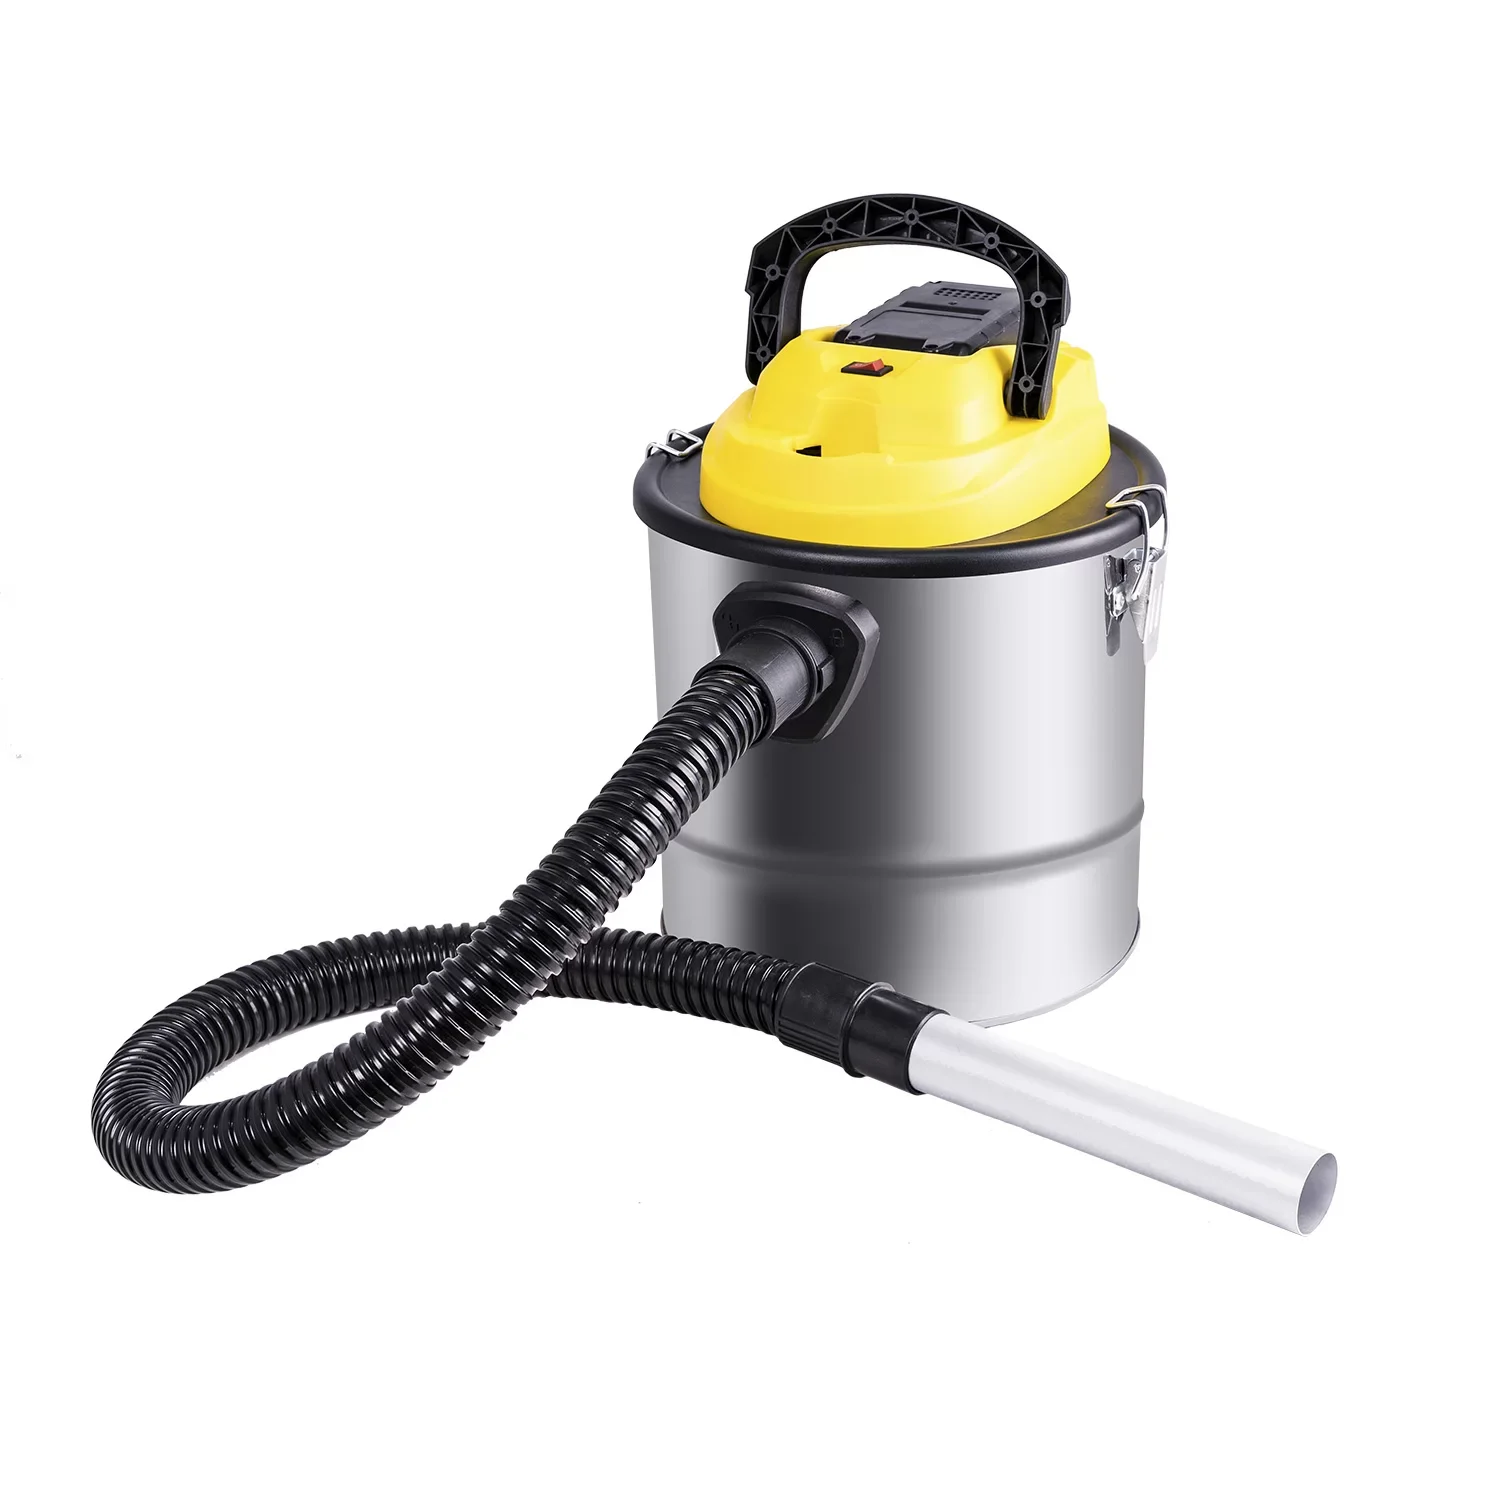 Cordless ash vacuum cleaner